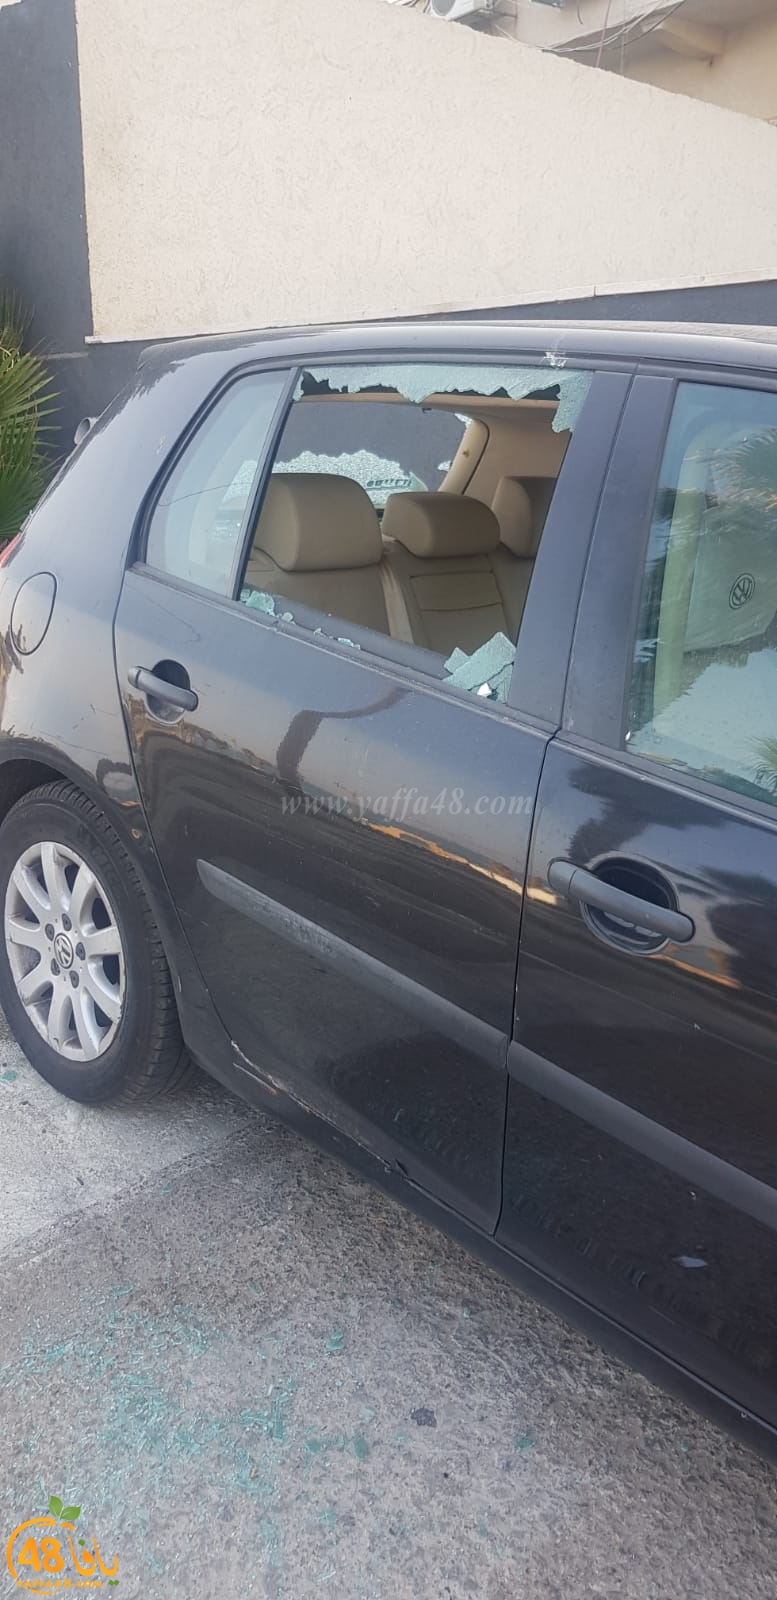  بالصور: تهشيم زجاج عدد من سيارات السكان في حي الجبلية بيافا 